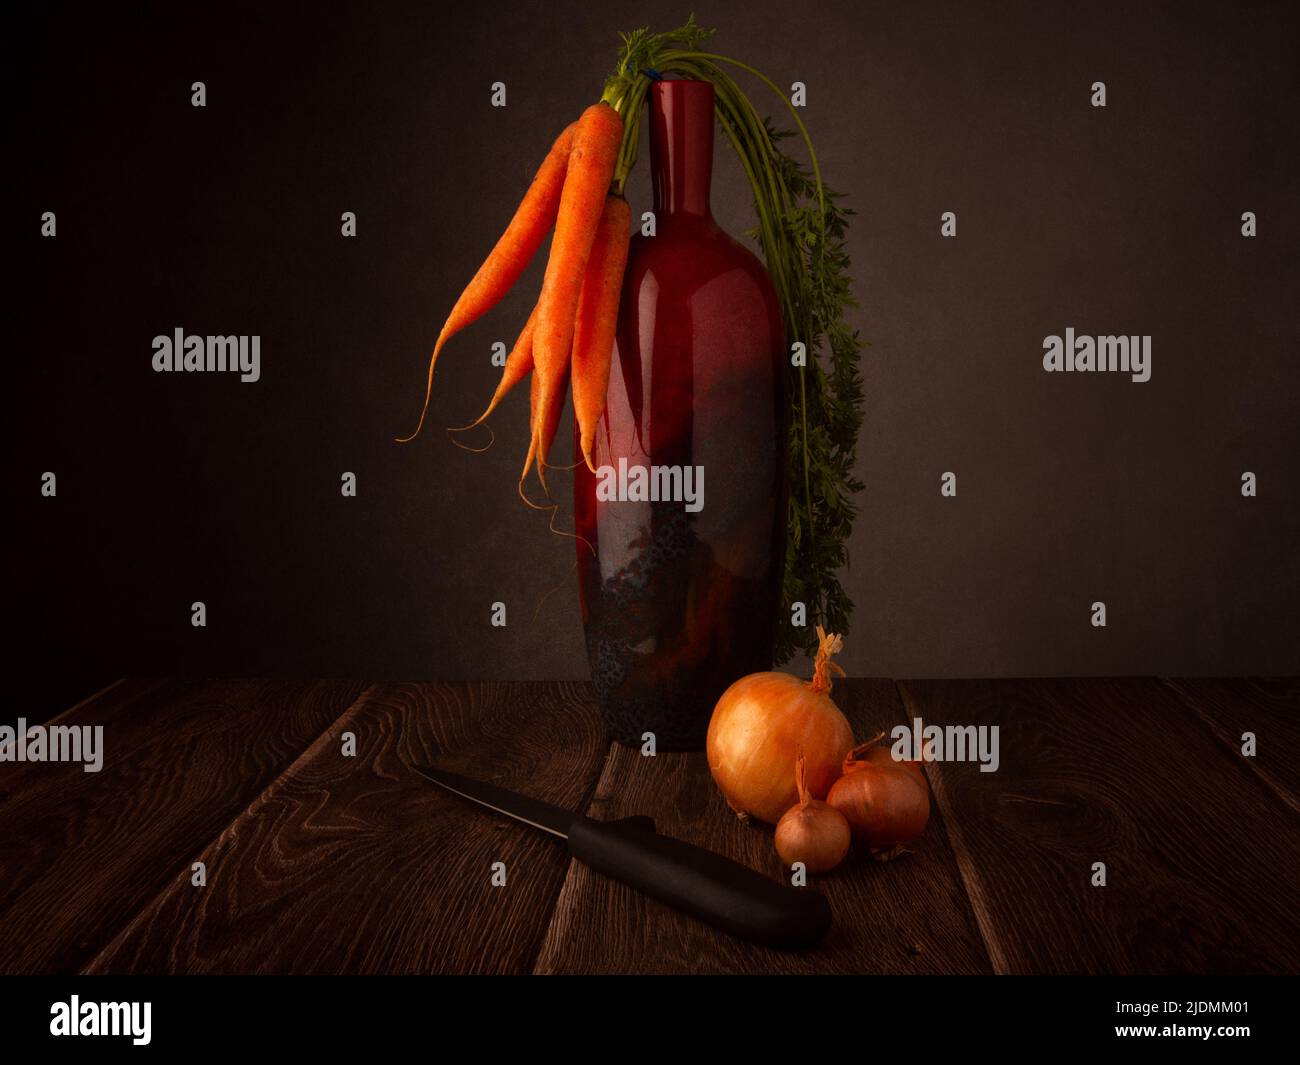 Stillleben von Bio-Karotten, die auf einer Vase, Zwiebeln und einem Messer auf einem dunklen Holztisch mit dunklem Hintergrund oder Kopie ruhen Stockfoto